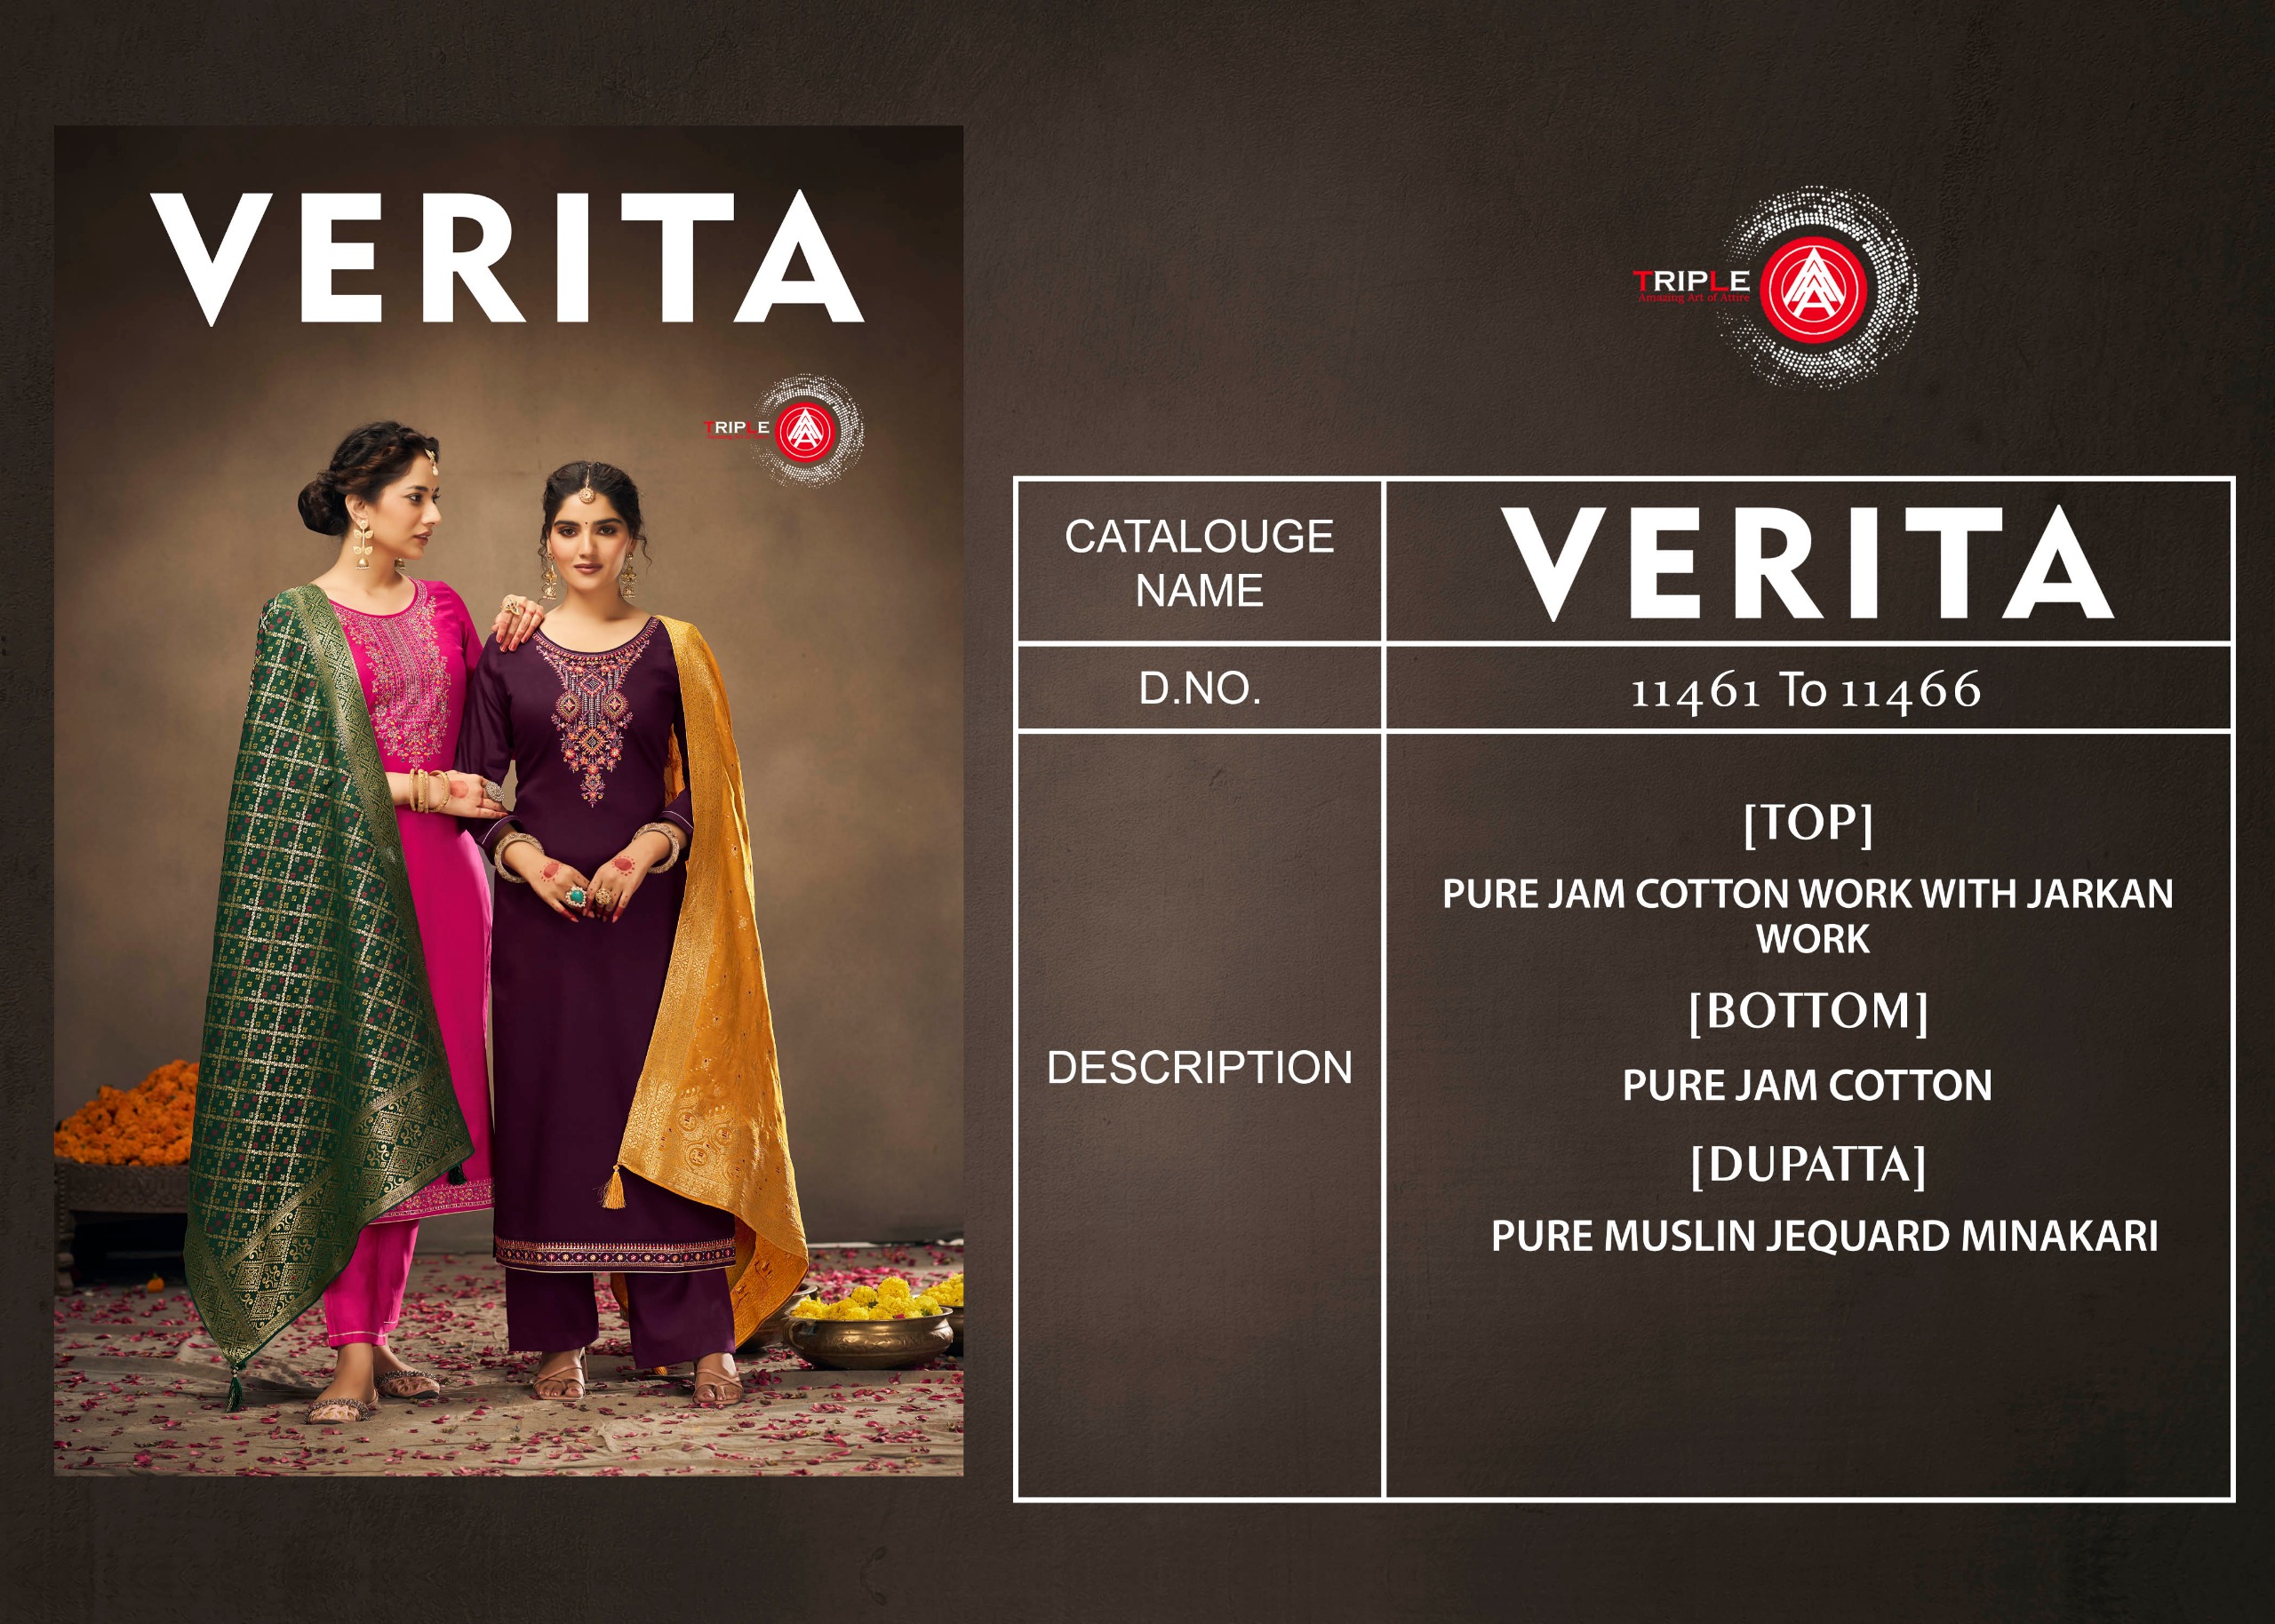 Triple Aaa Verita collection 2